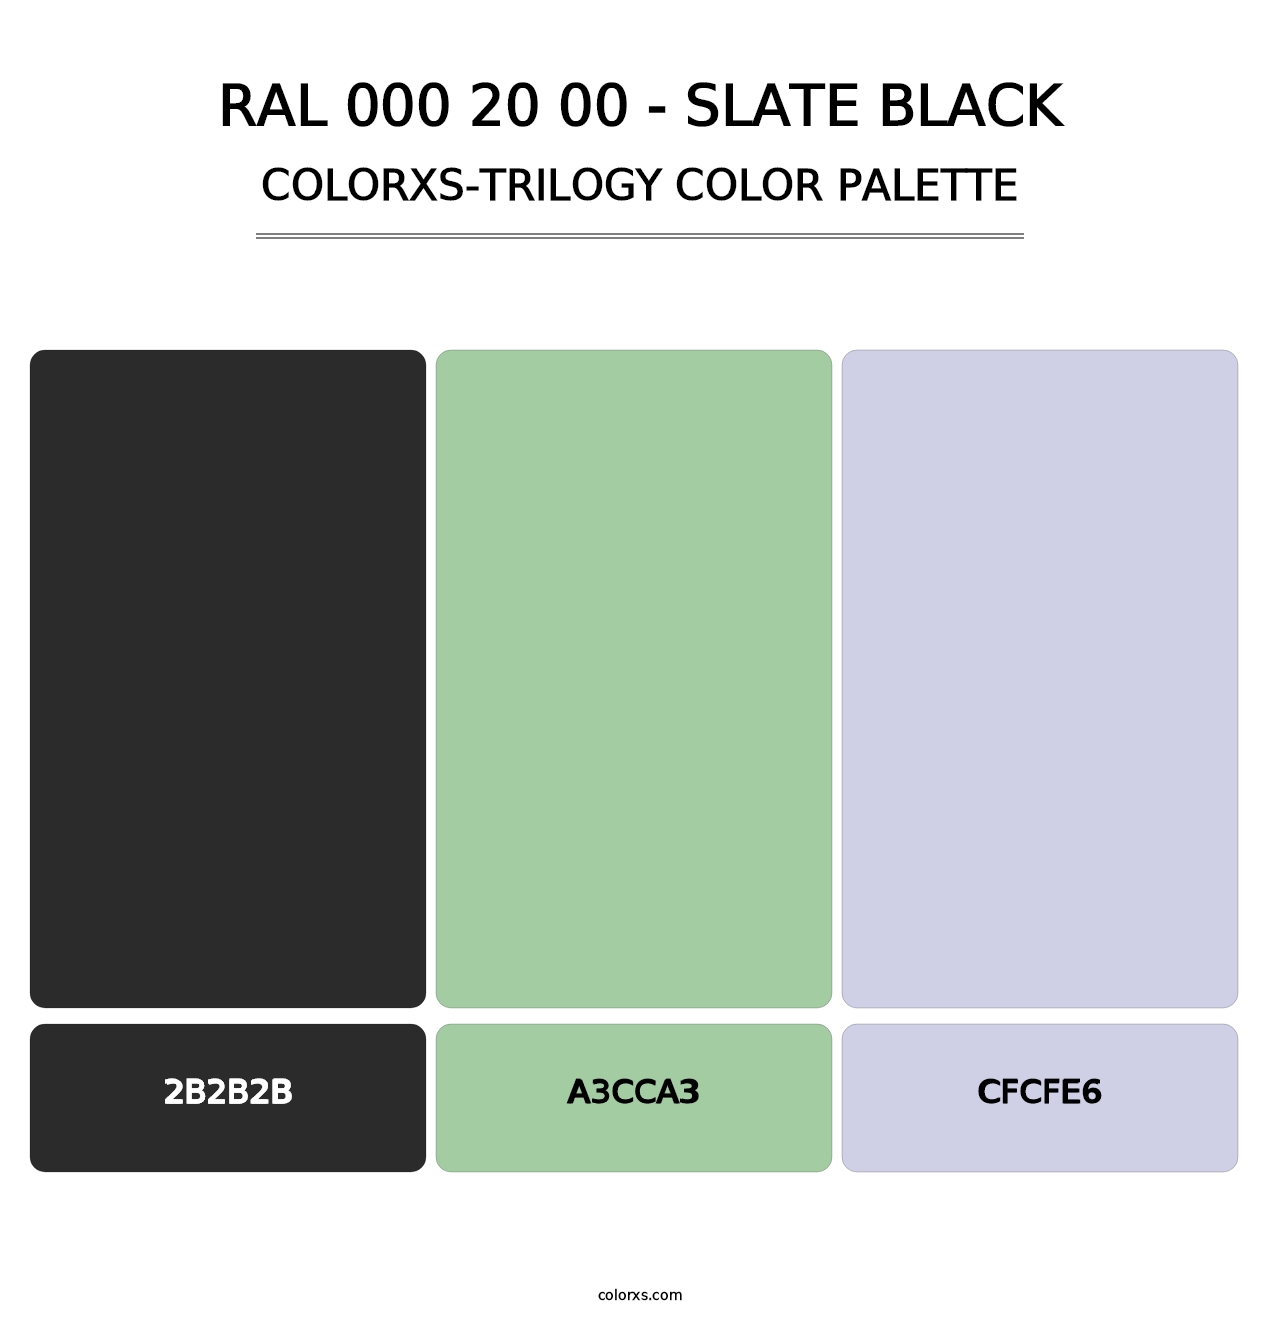 RAL 000 20 00 - Slate Black - Colorxs Trilogy Palette